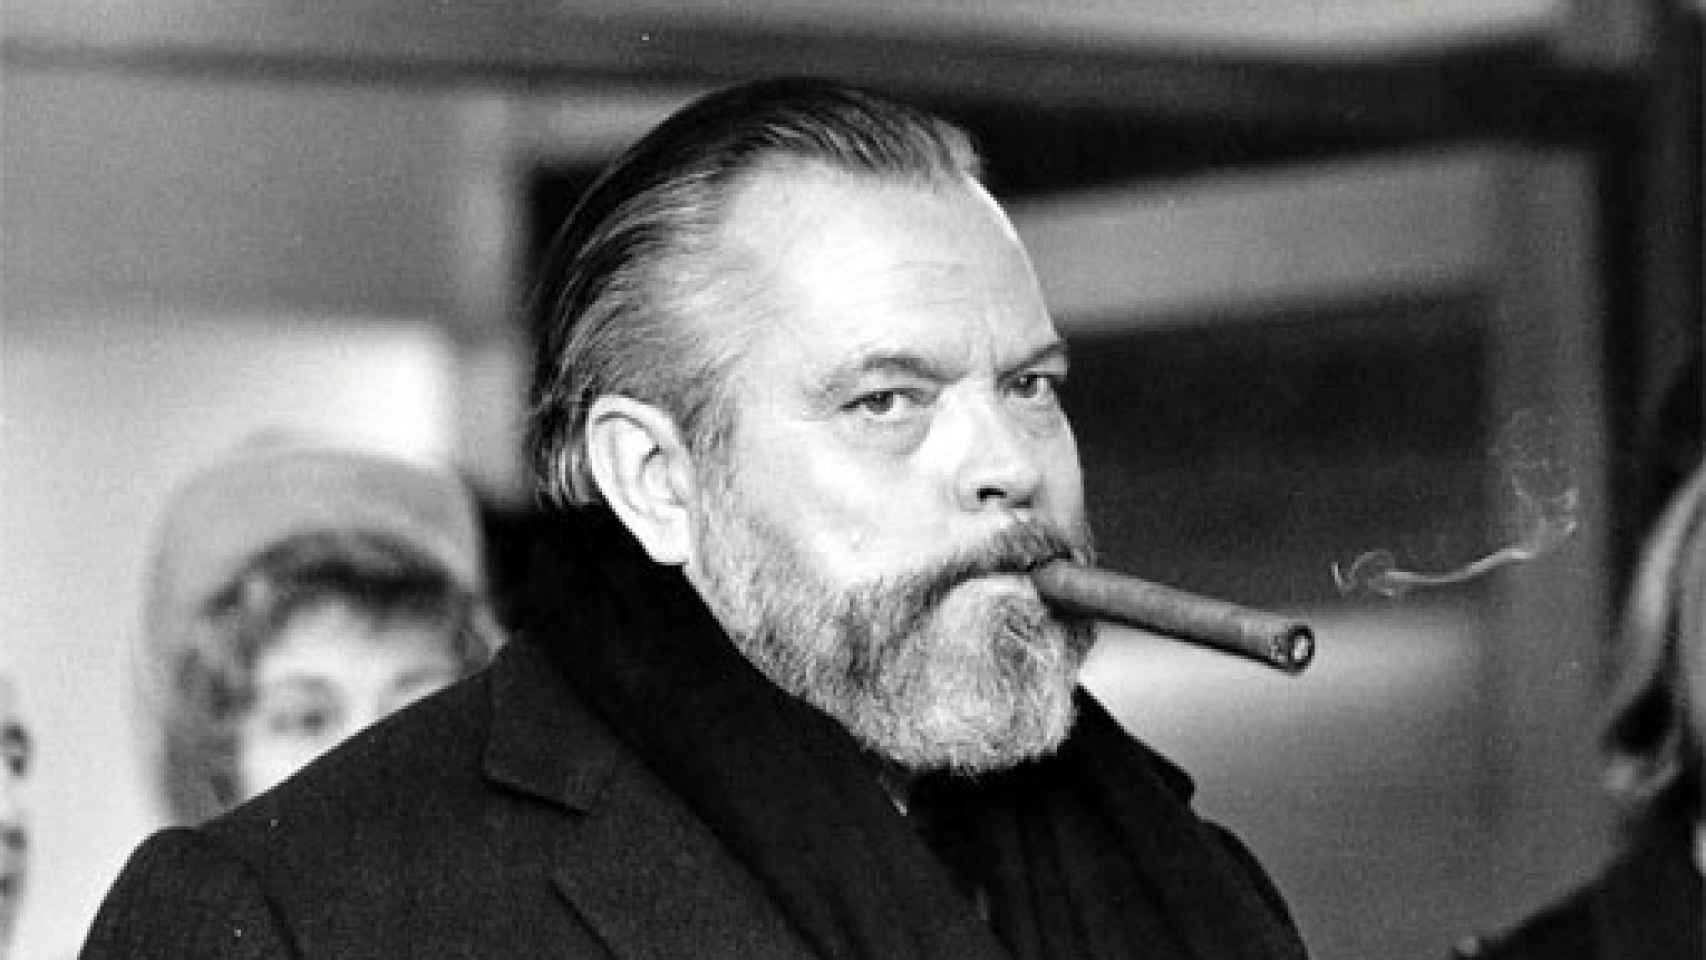 Image: Hablando de Orson Welles...